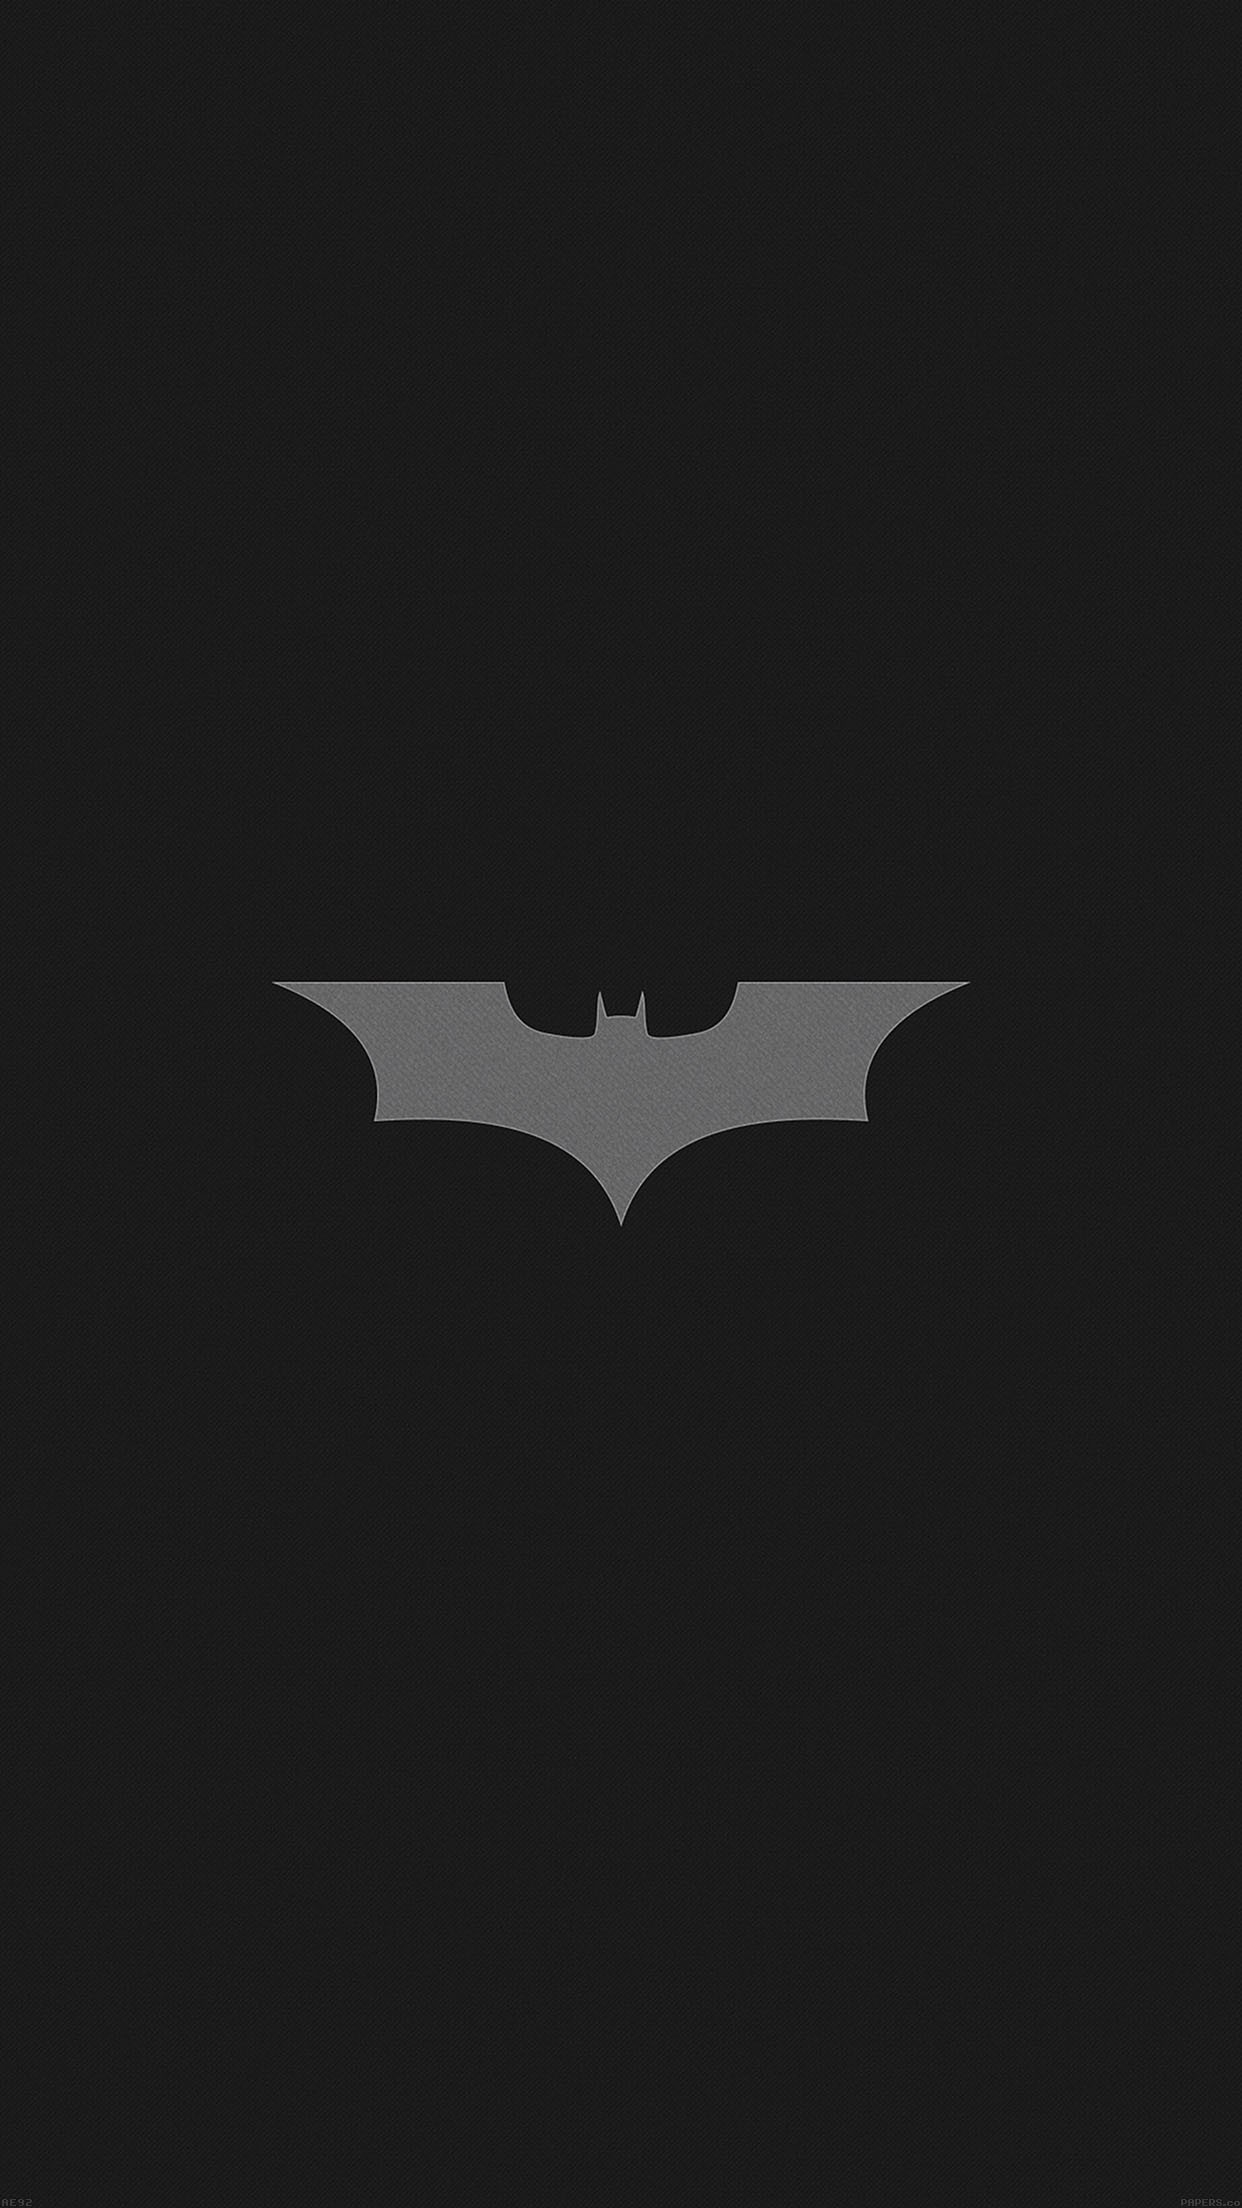 Batmobile and Batman Wallpaper | Wallpapers HD | Pinterest | Batman  wallpaper, Batmobile and Batman